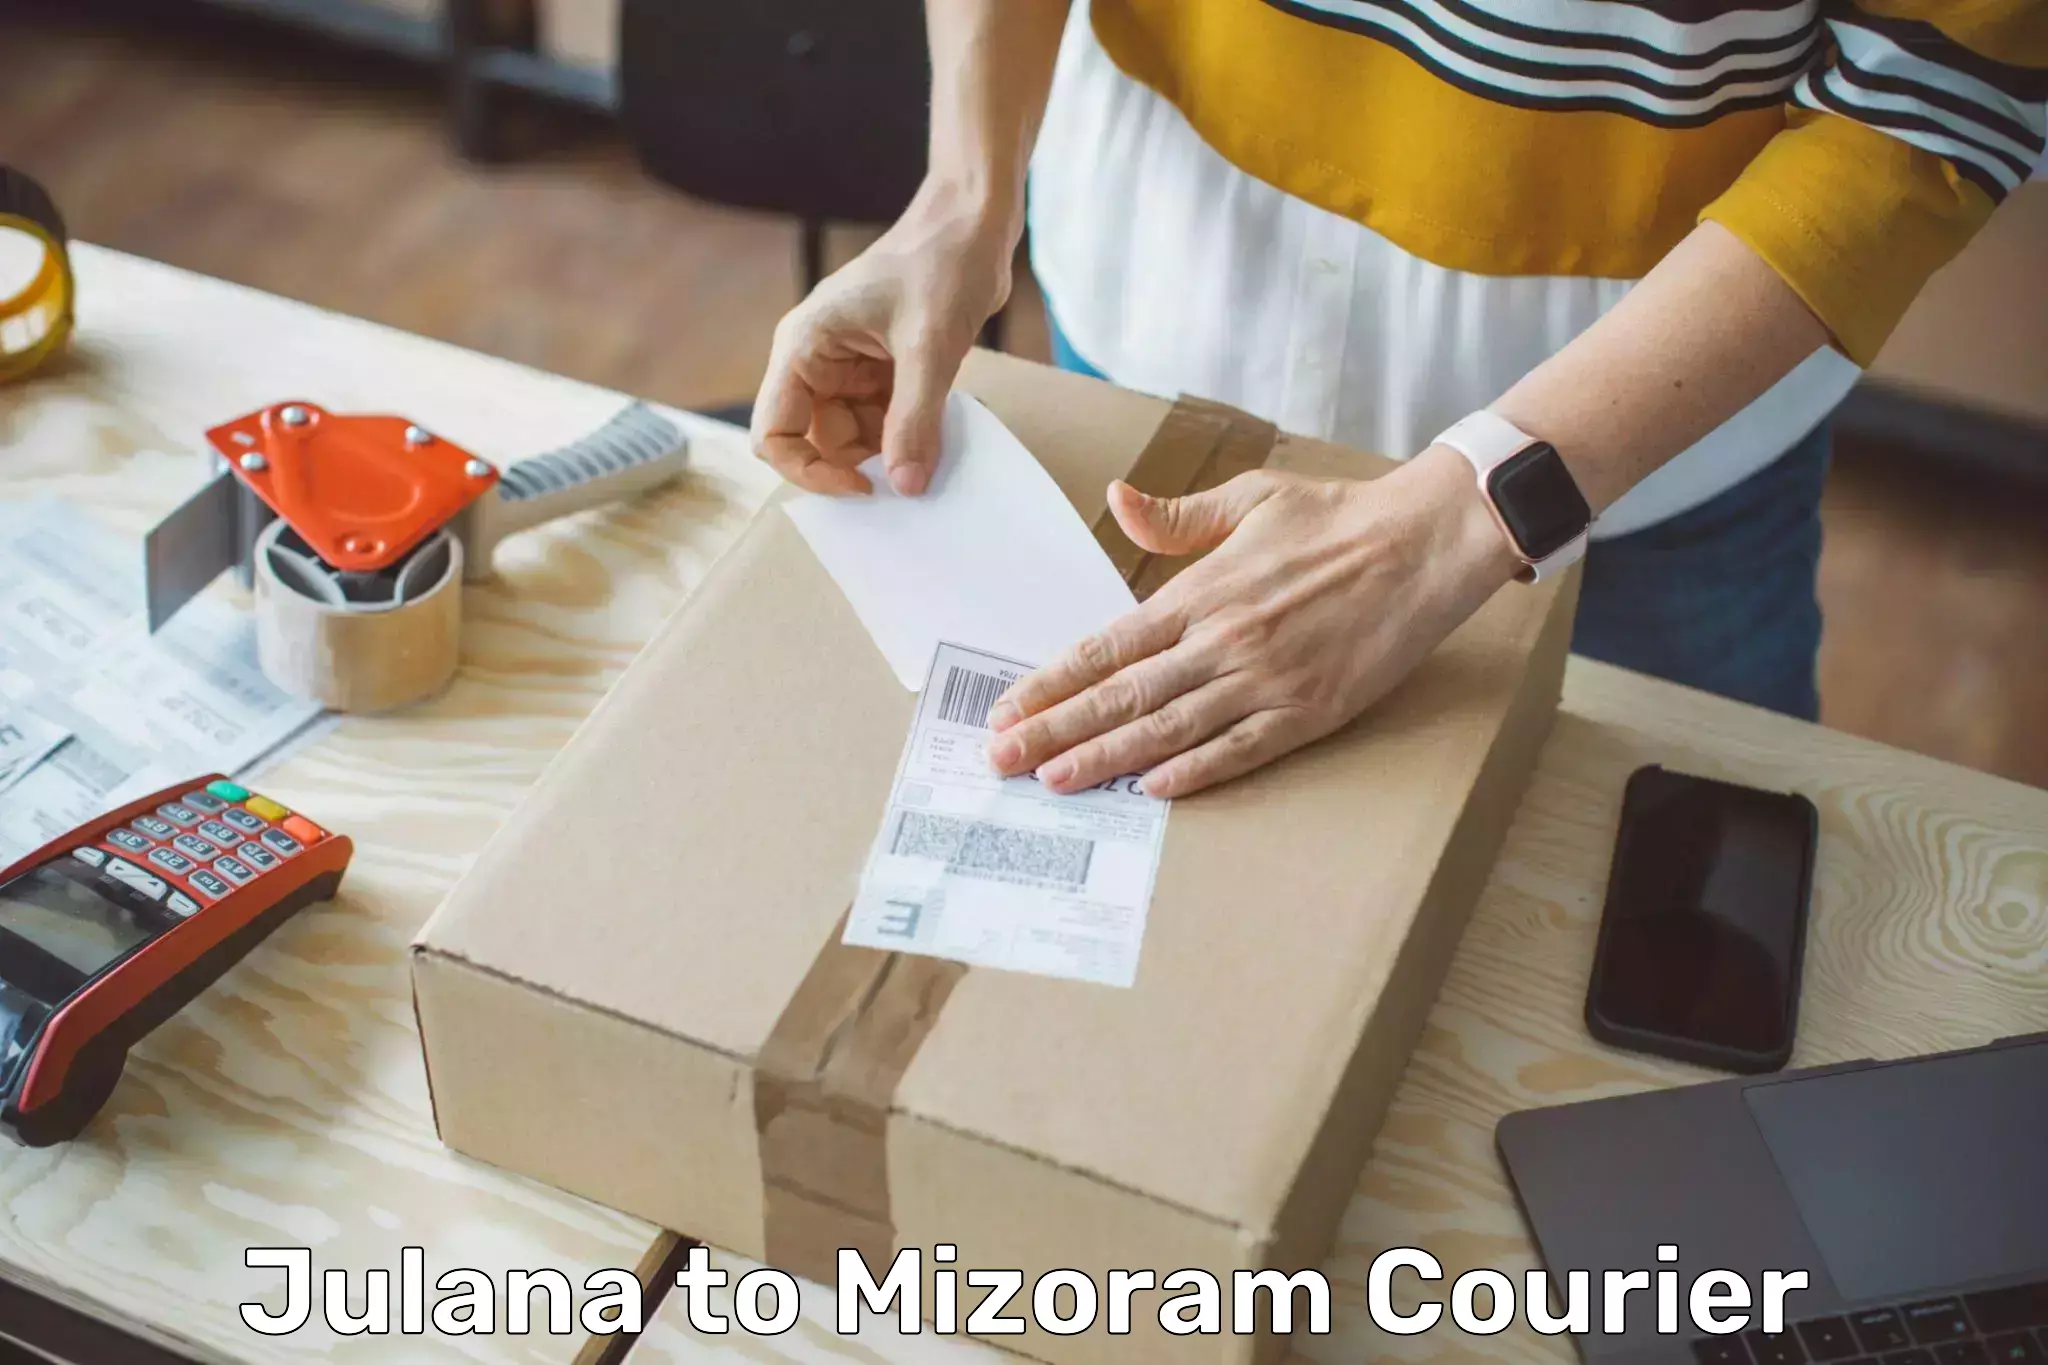 International courier rates Julana to Mizoram